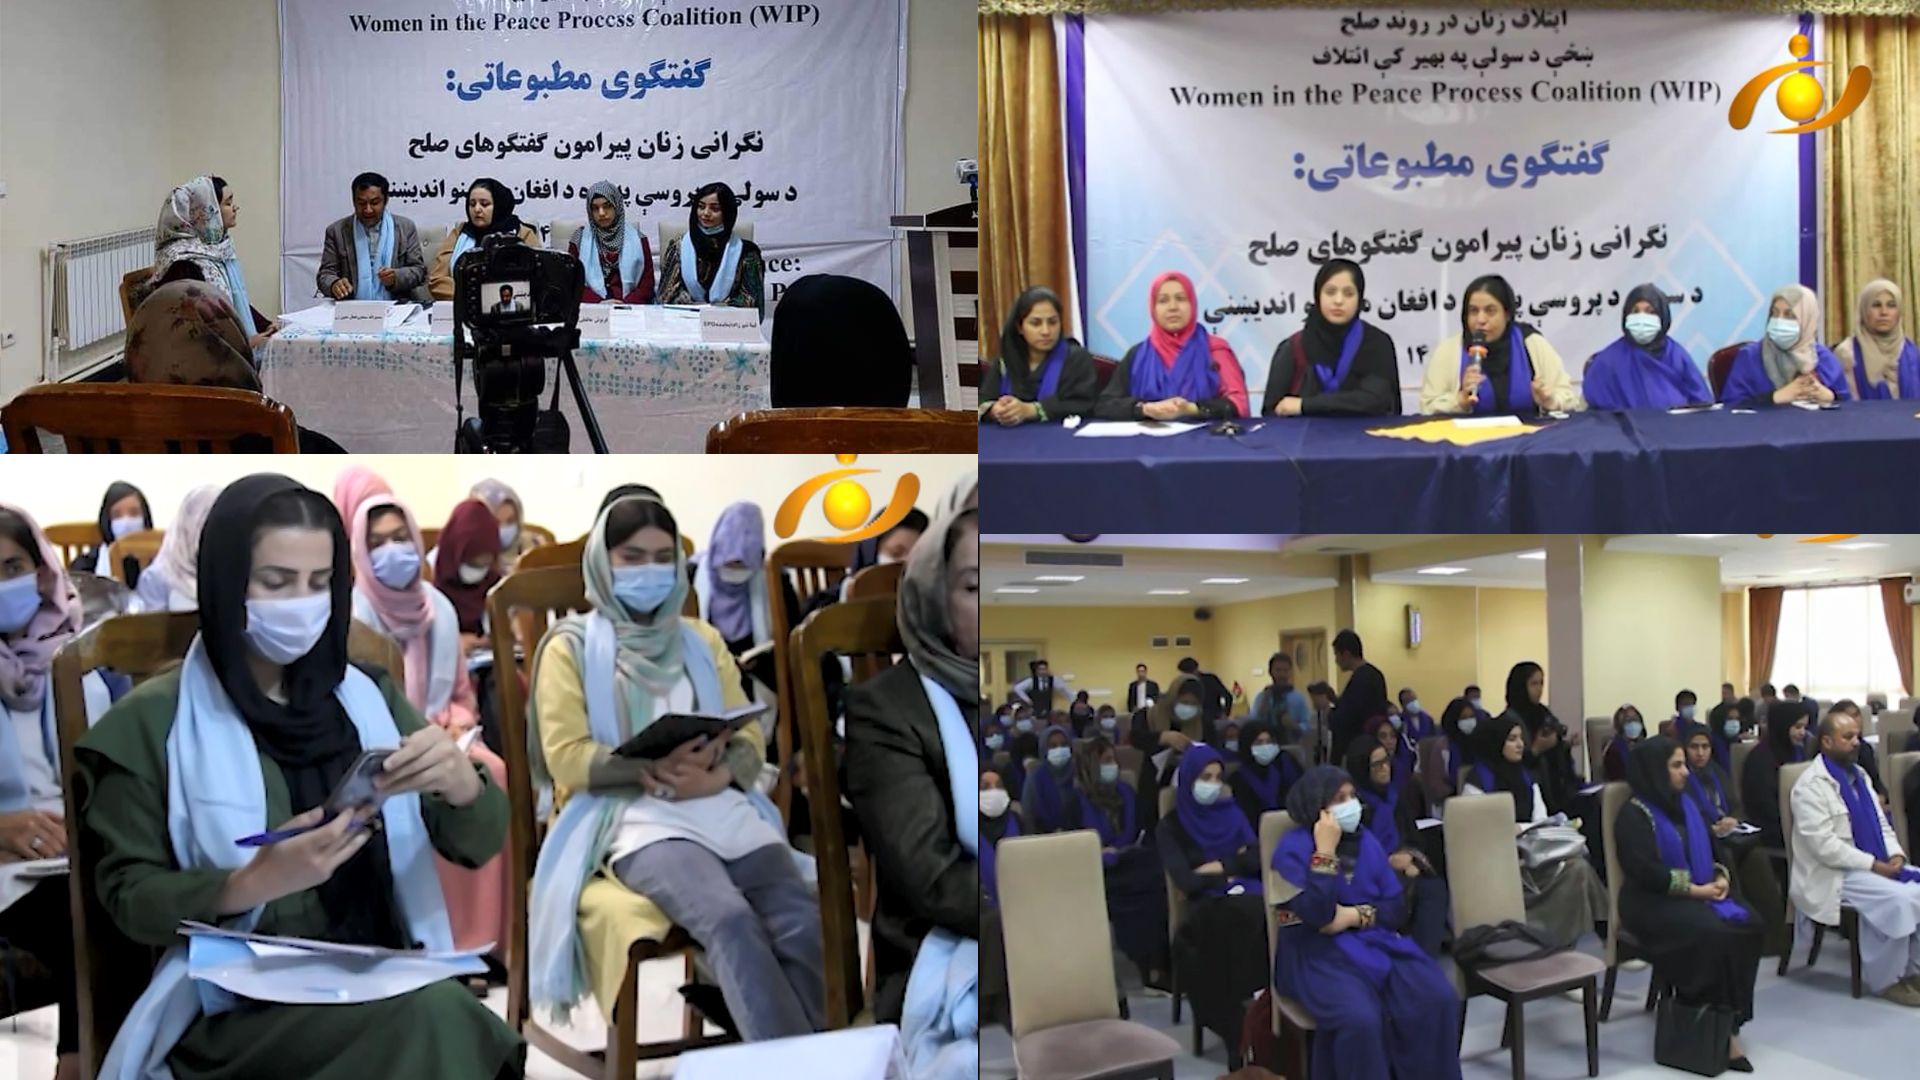 فعالان حقوق زن دربدخشان و هرات: حضور ما در روند صلح کمرنگ است